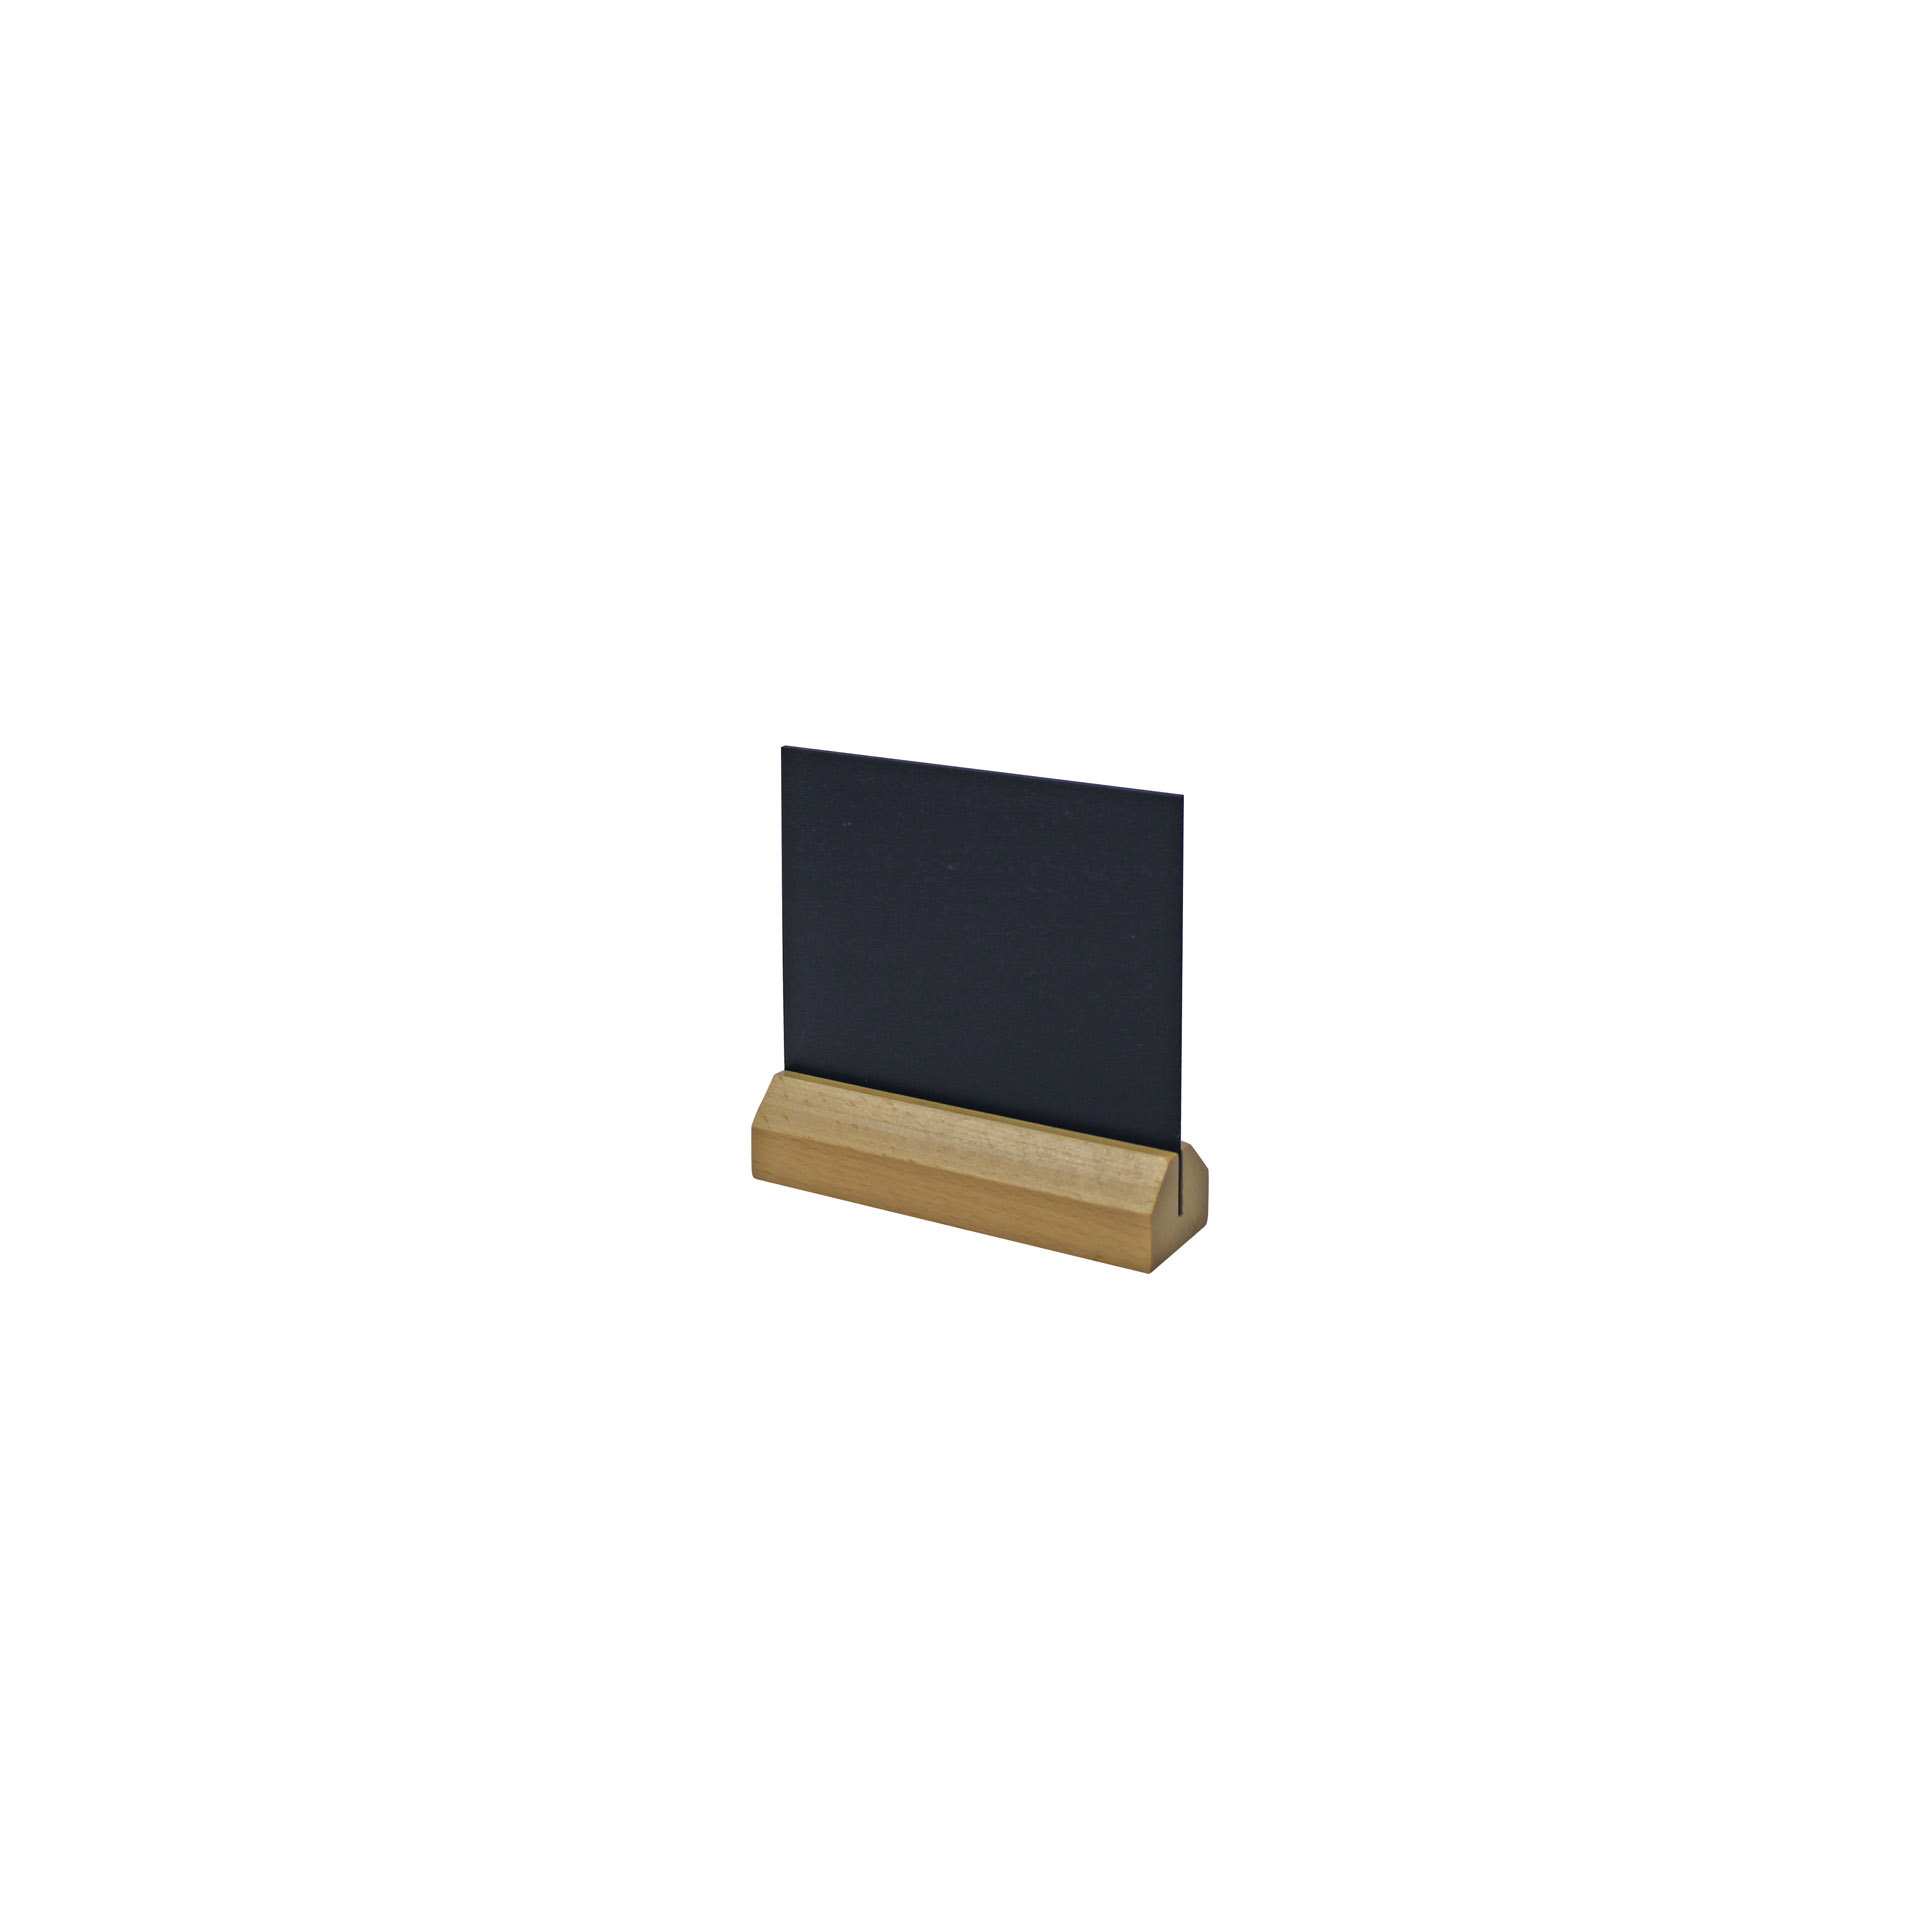 Tischaufsteller - Ausführung: mit lackiertem Naturholzfuß - schwarz - Abm. 4,0 x 14,0 x 14,0 cm - PVC - 198961-C